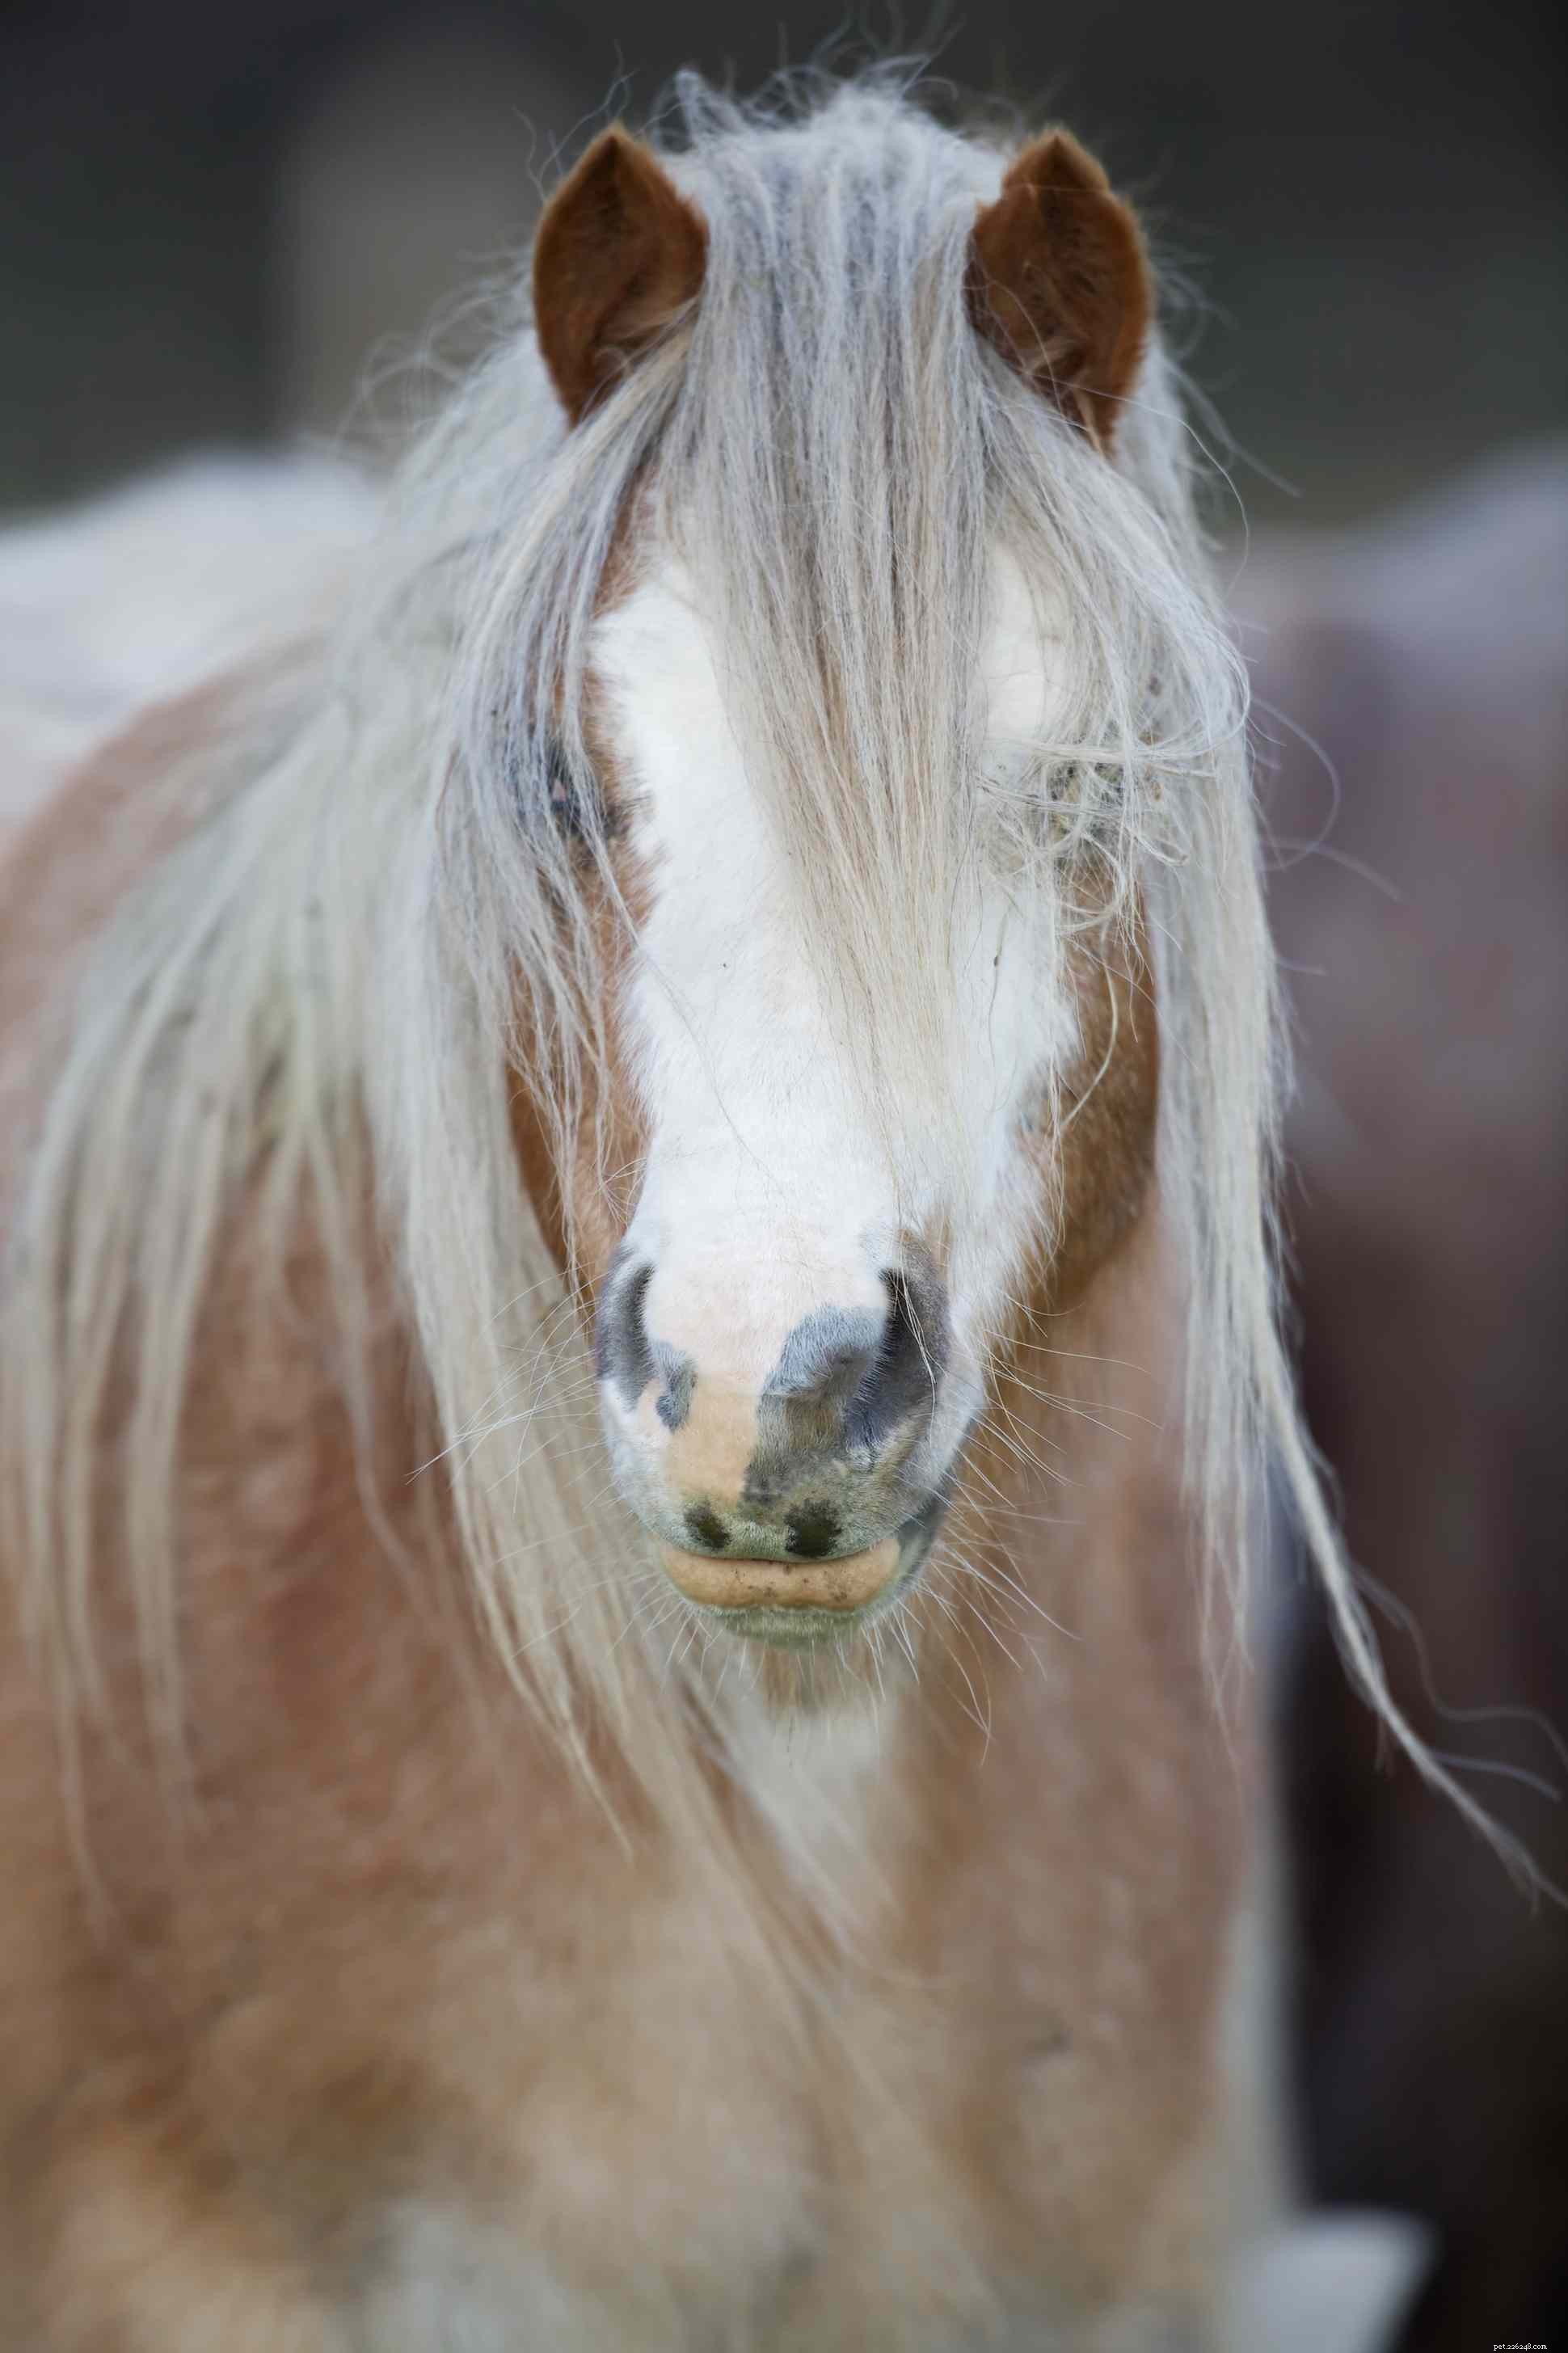 Značky na obličeji koní